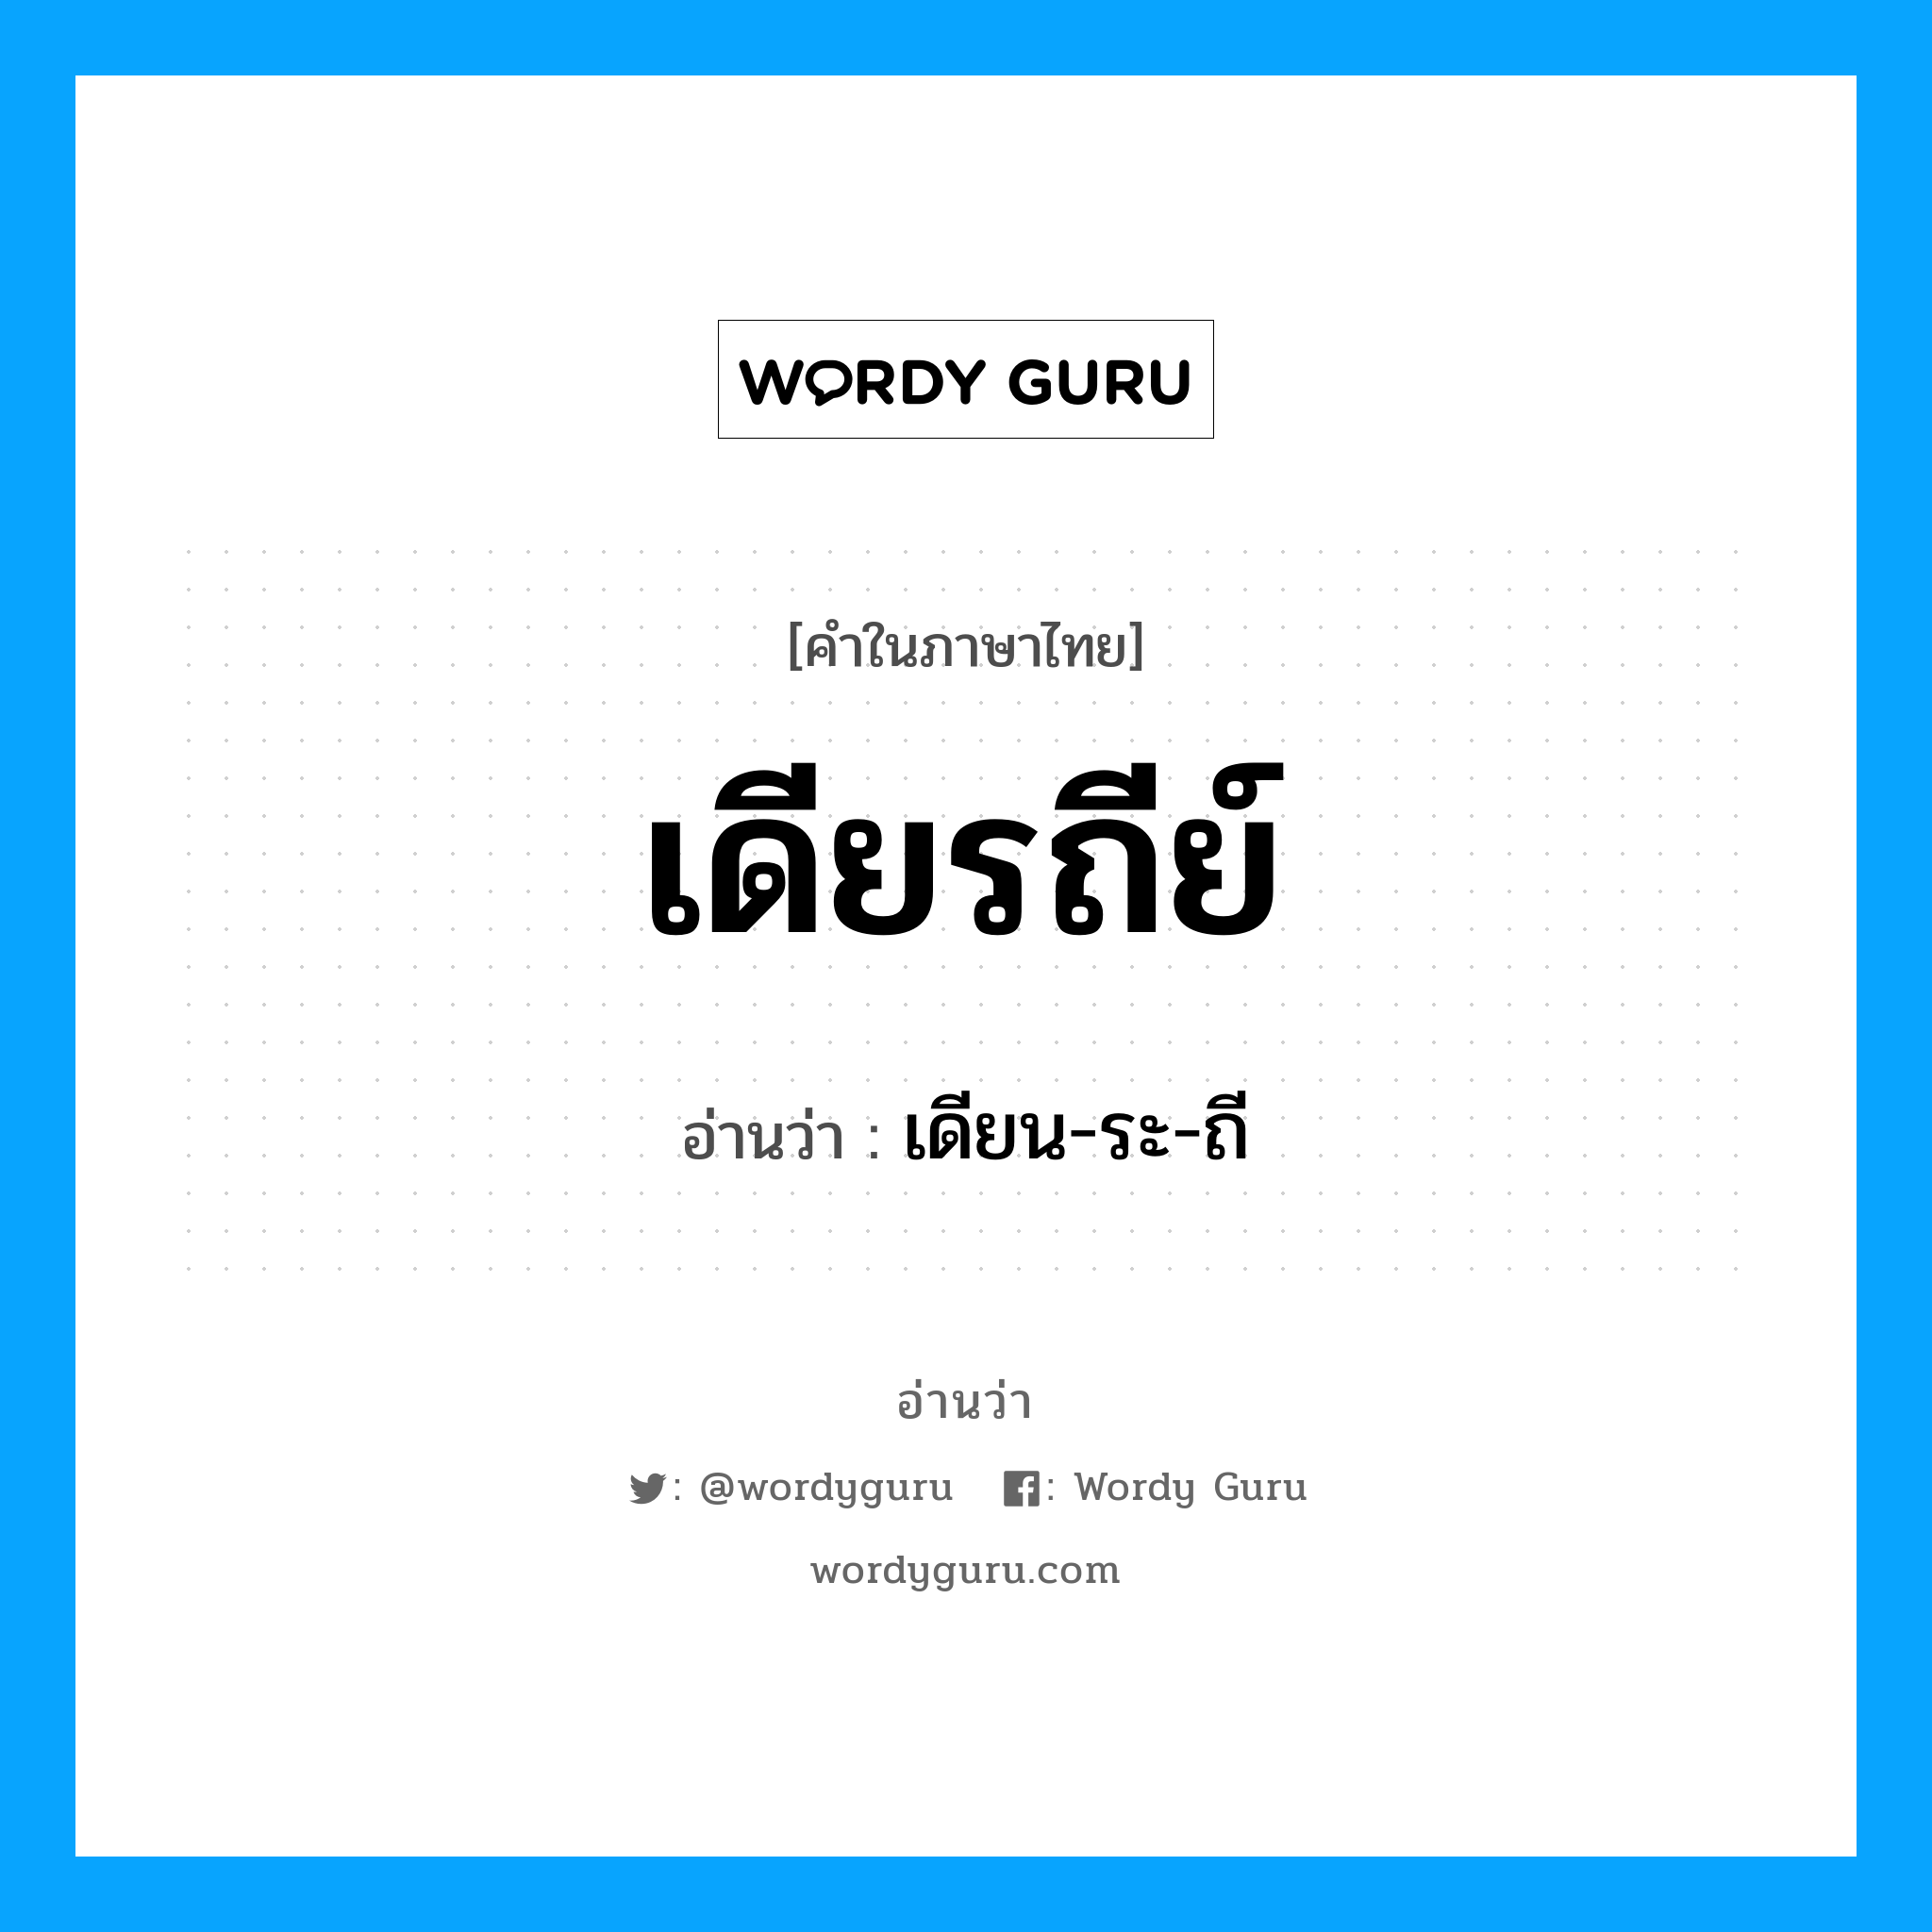 เดียน-ระ-ถี เป็นคำอ่านของคำไหน?, คำในภาษาไทย เดียน-ระ-ถี อ่านว่า เดียรถีย์